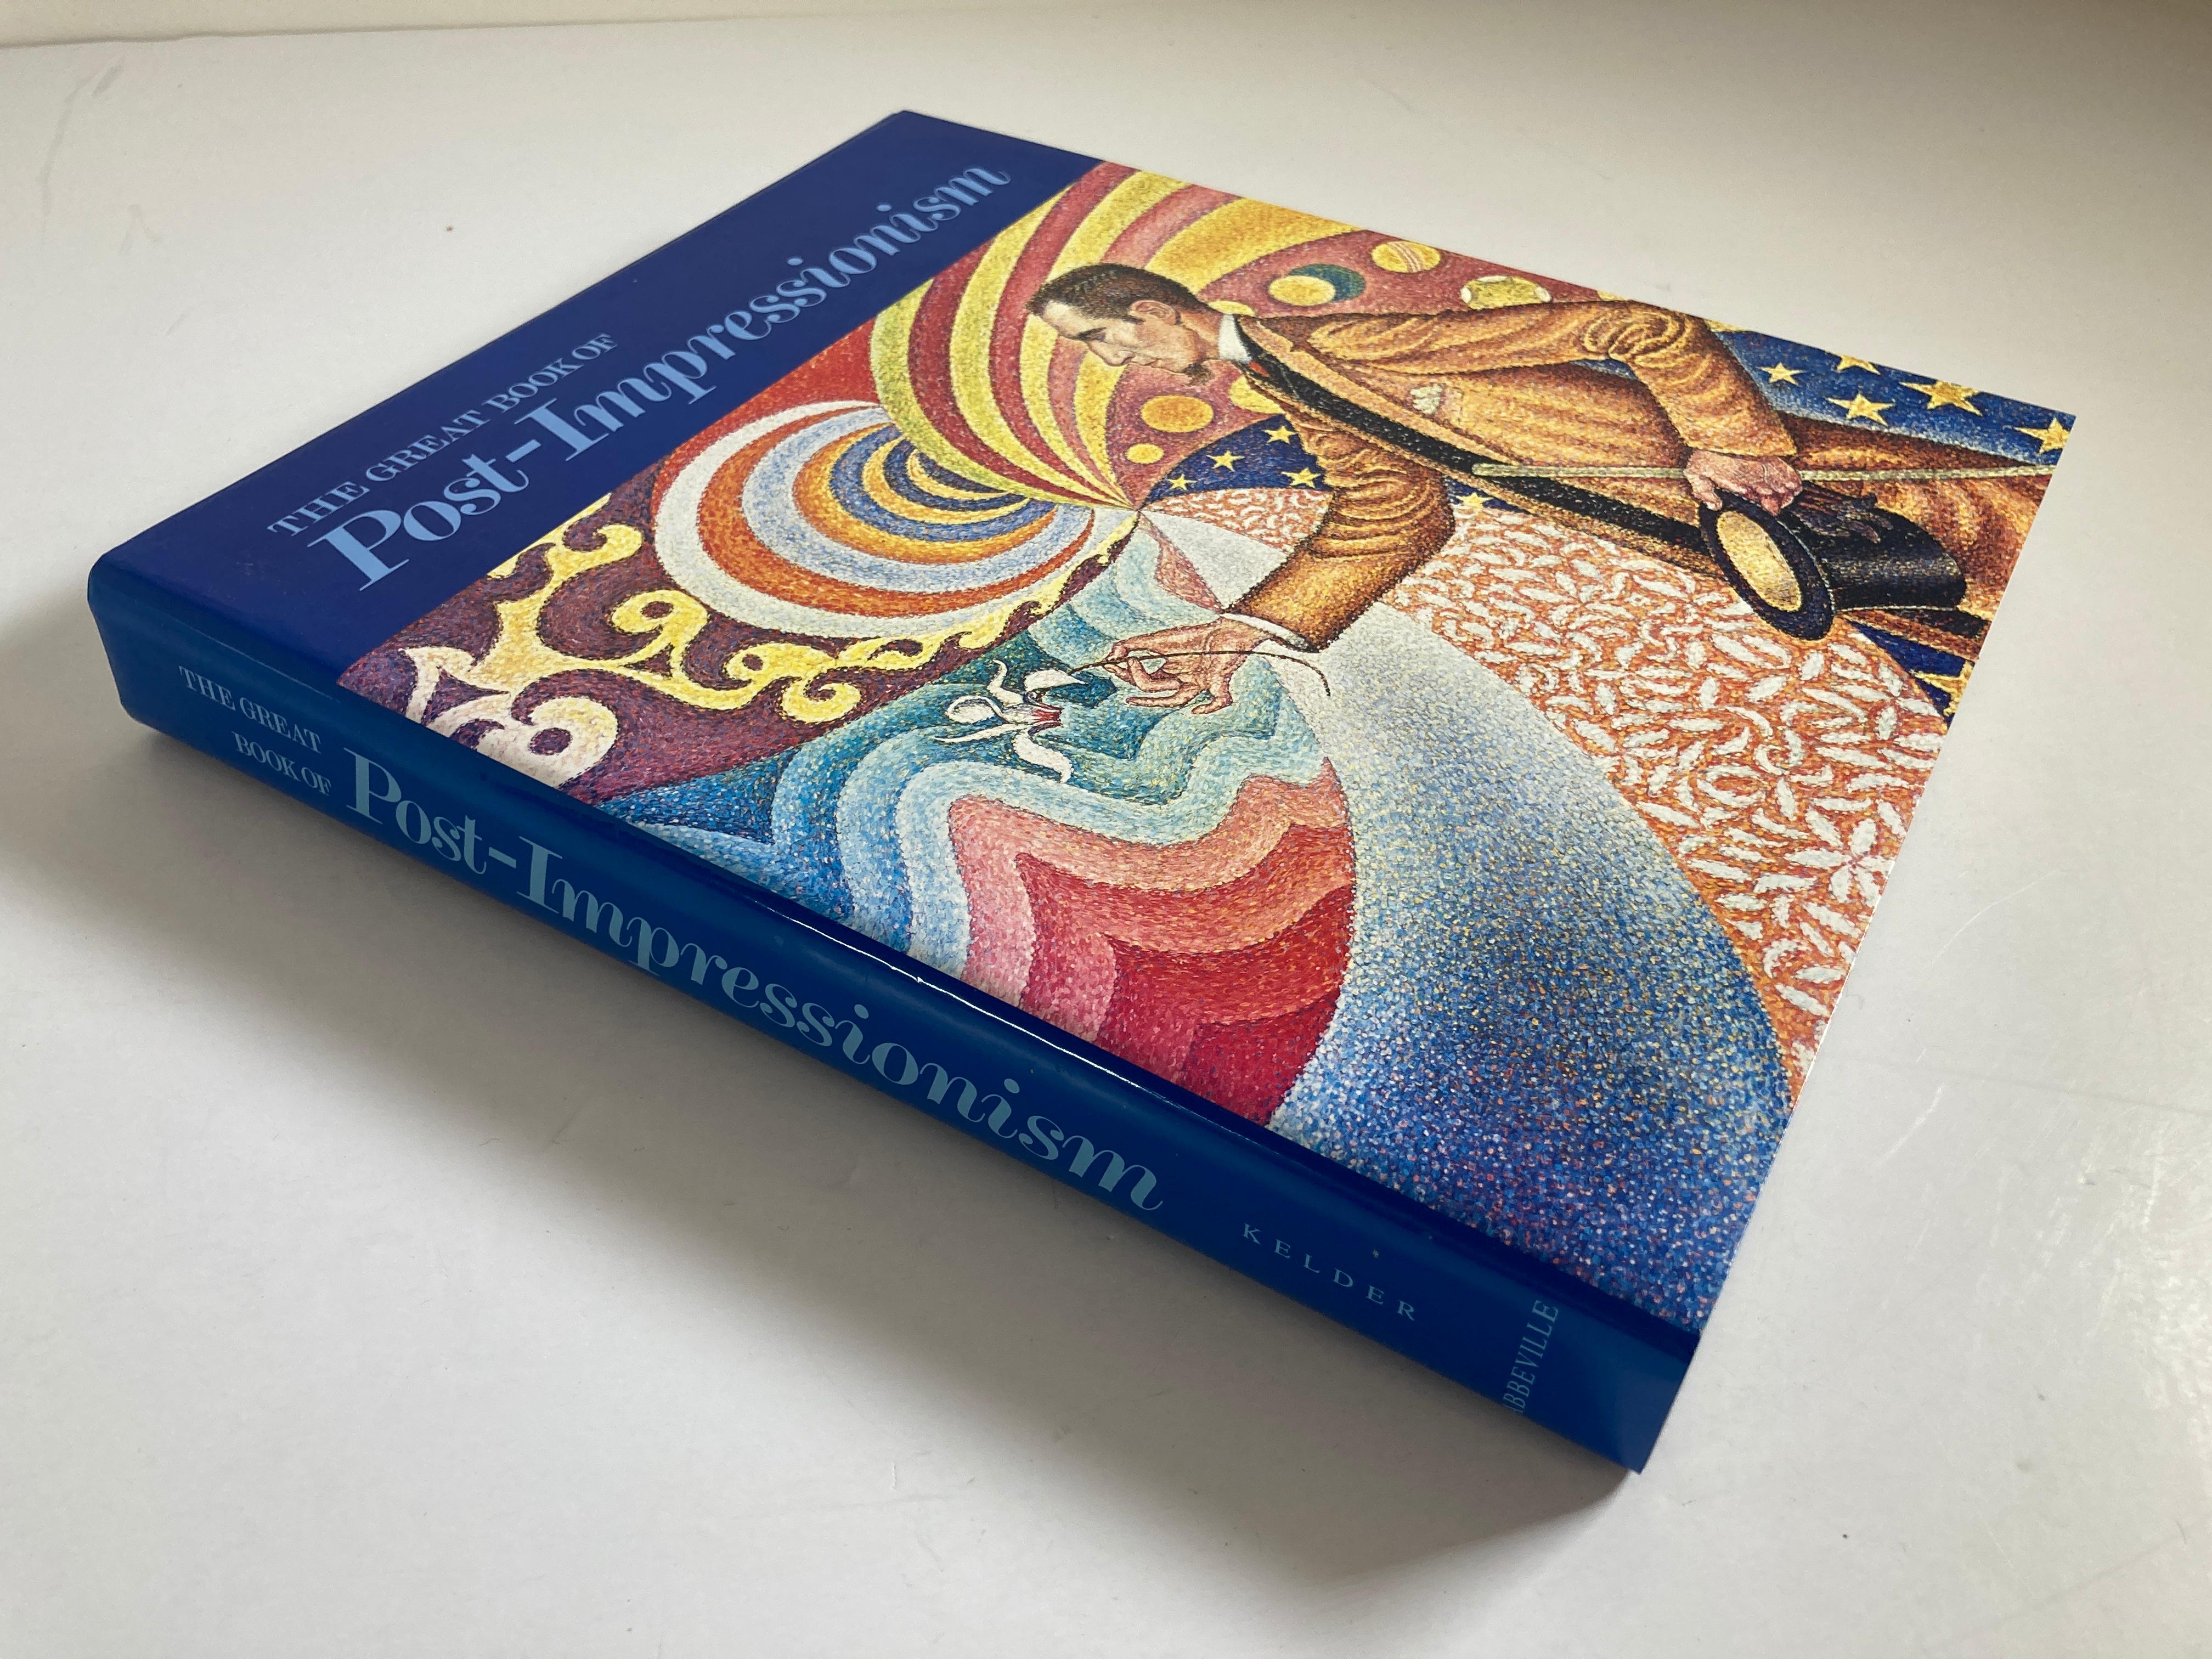 Das große Buch des Post-Impressionismus von Diane Kelder,
In dieser großartigen Fortsetzung von The Great Book of French Impressionism berichtet Diane Kelder über die brillanten Innovationen des Künstlers, der die Triumphe des Impressionismus